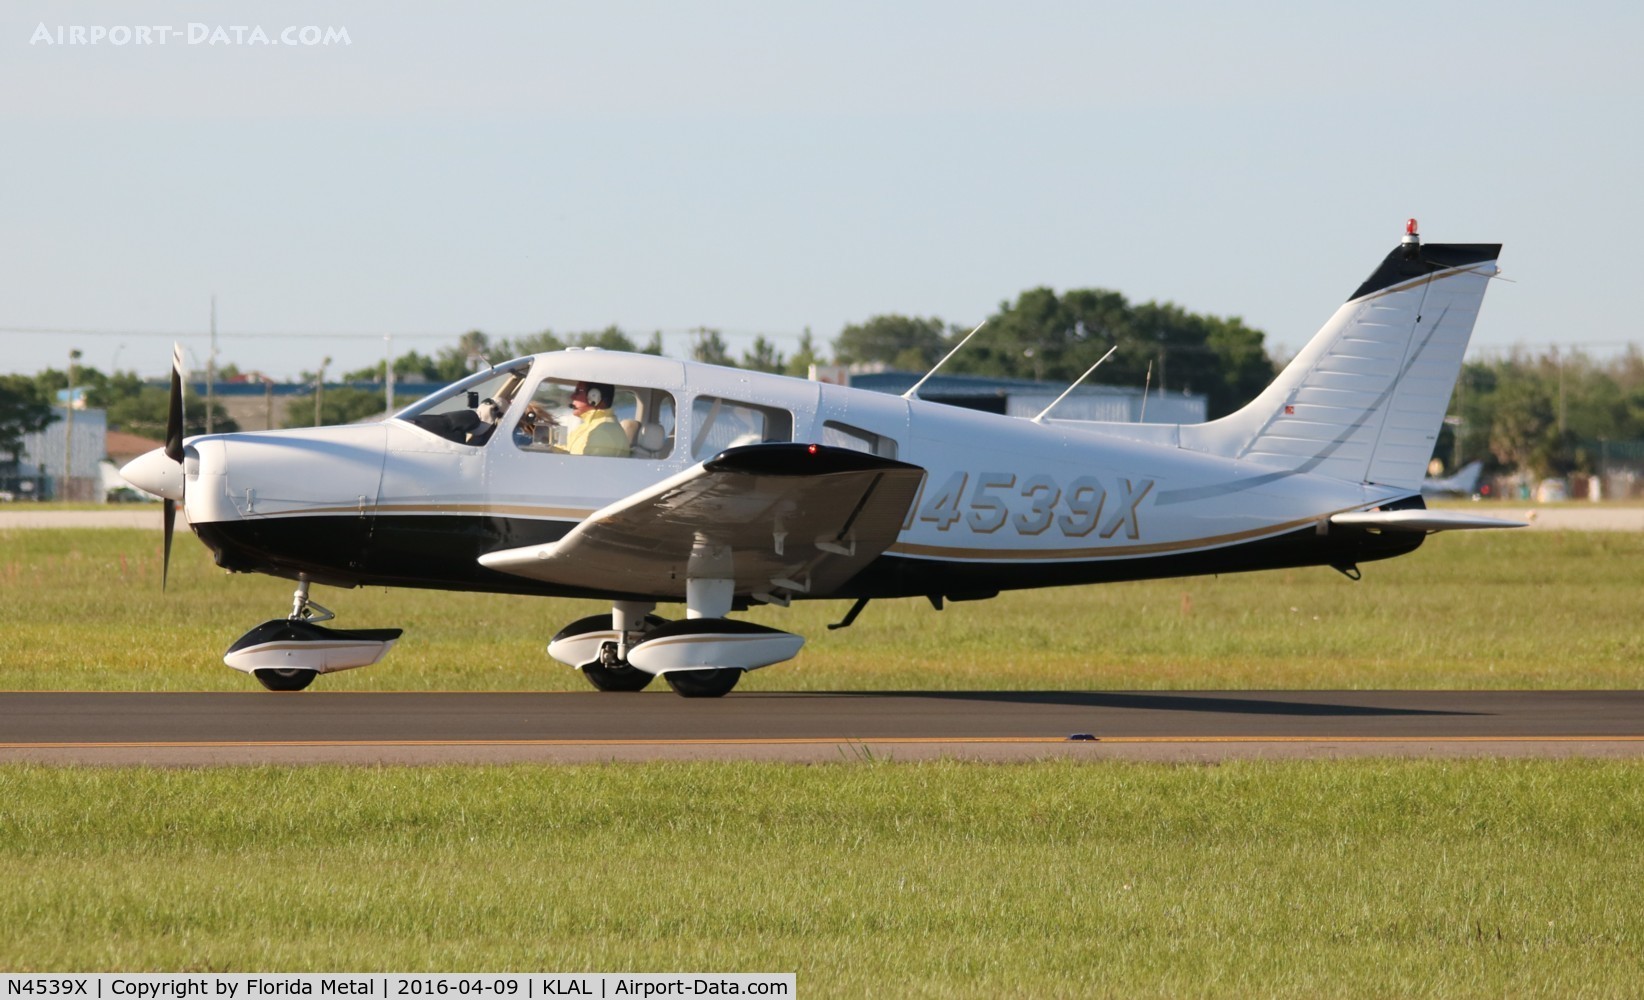 N4539X, 1975 Piper PA-28-151 C/N 28-7615026, PA-28-151